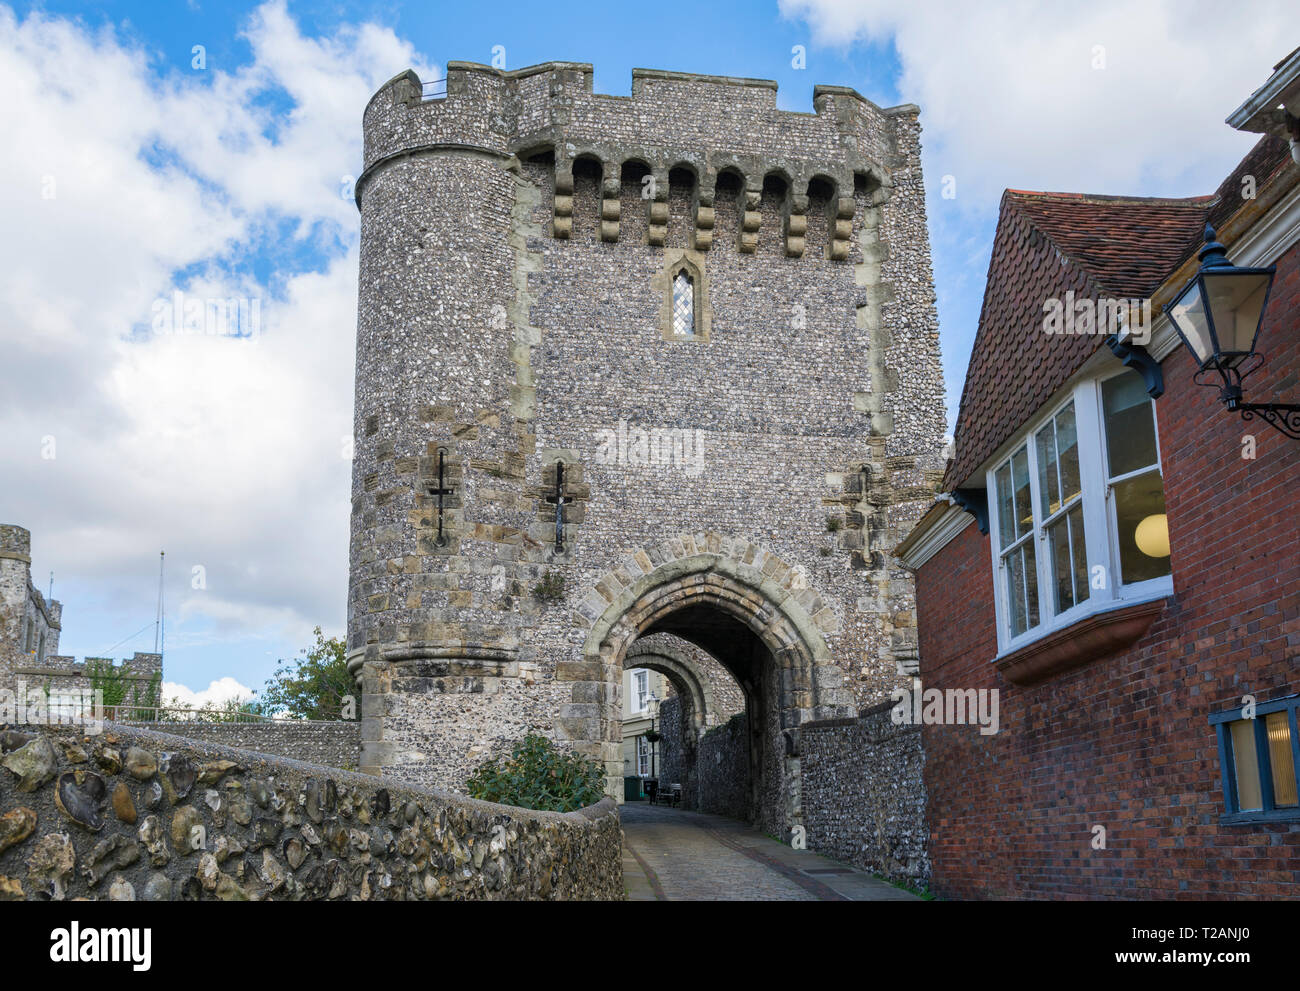 Entrée du château de Lewes et Barbican house dans la région de Lewes, East Sussex, Angleterre, Royaume-Uni. Banque D'Images